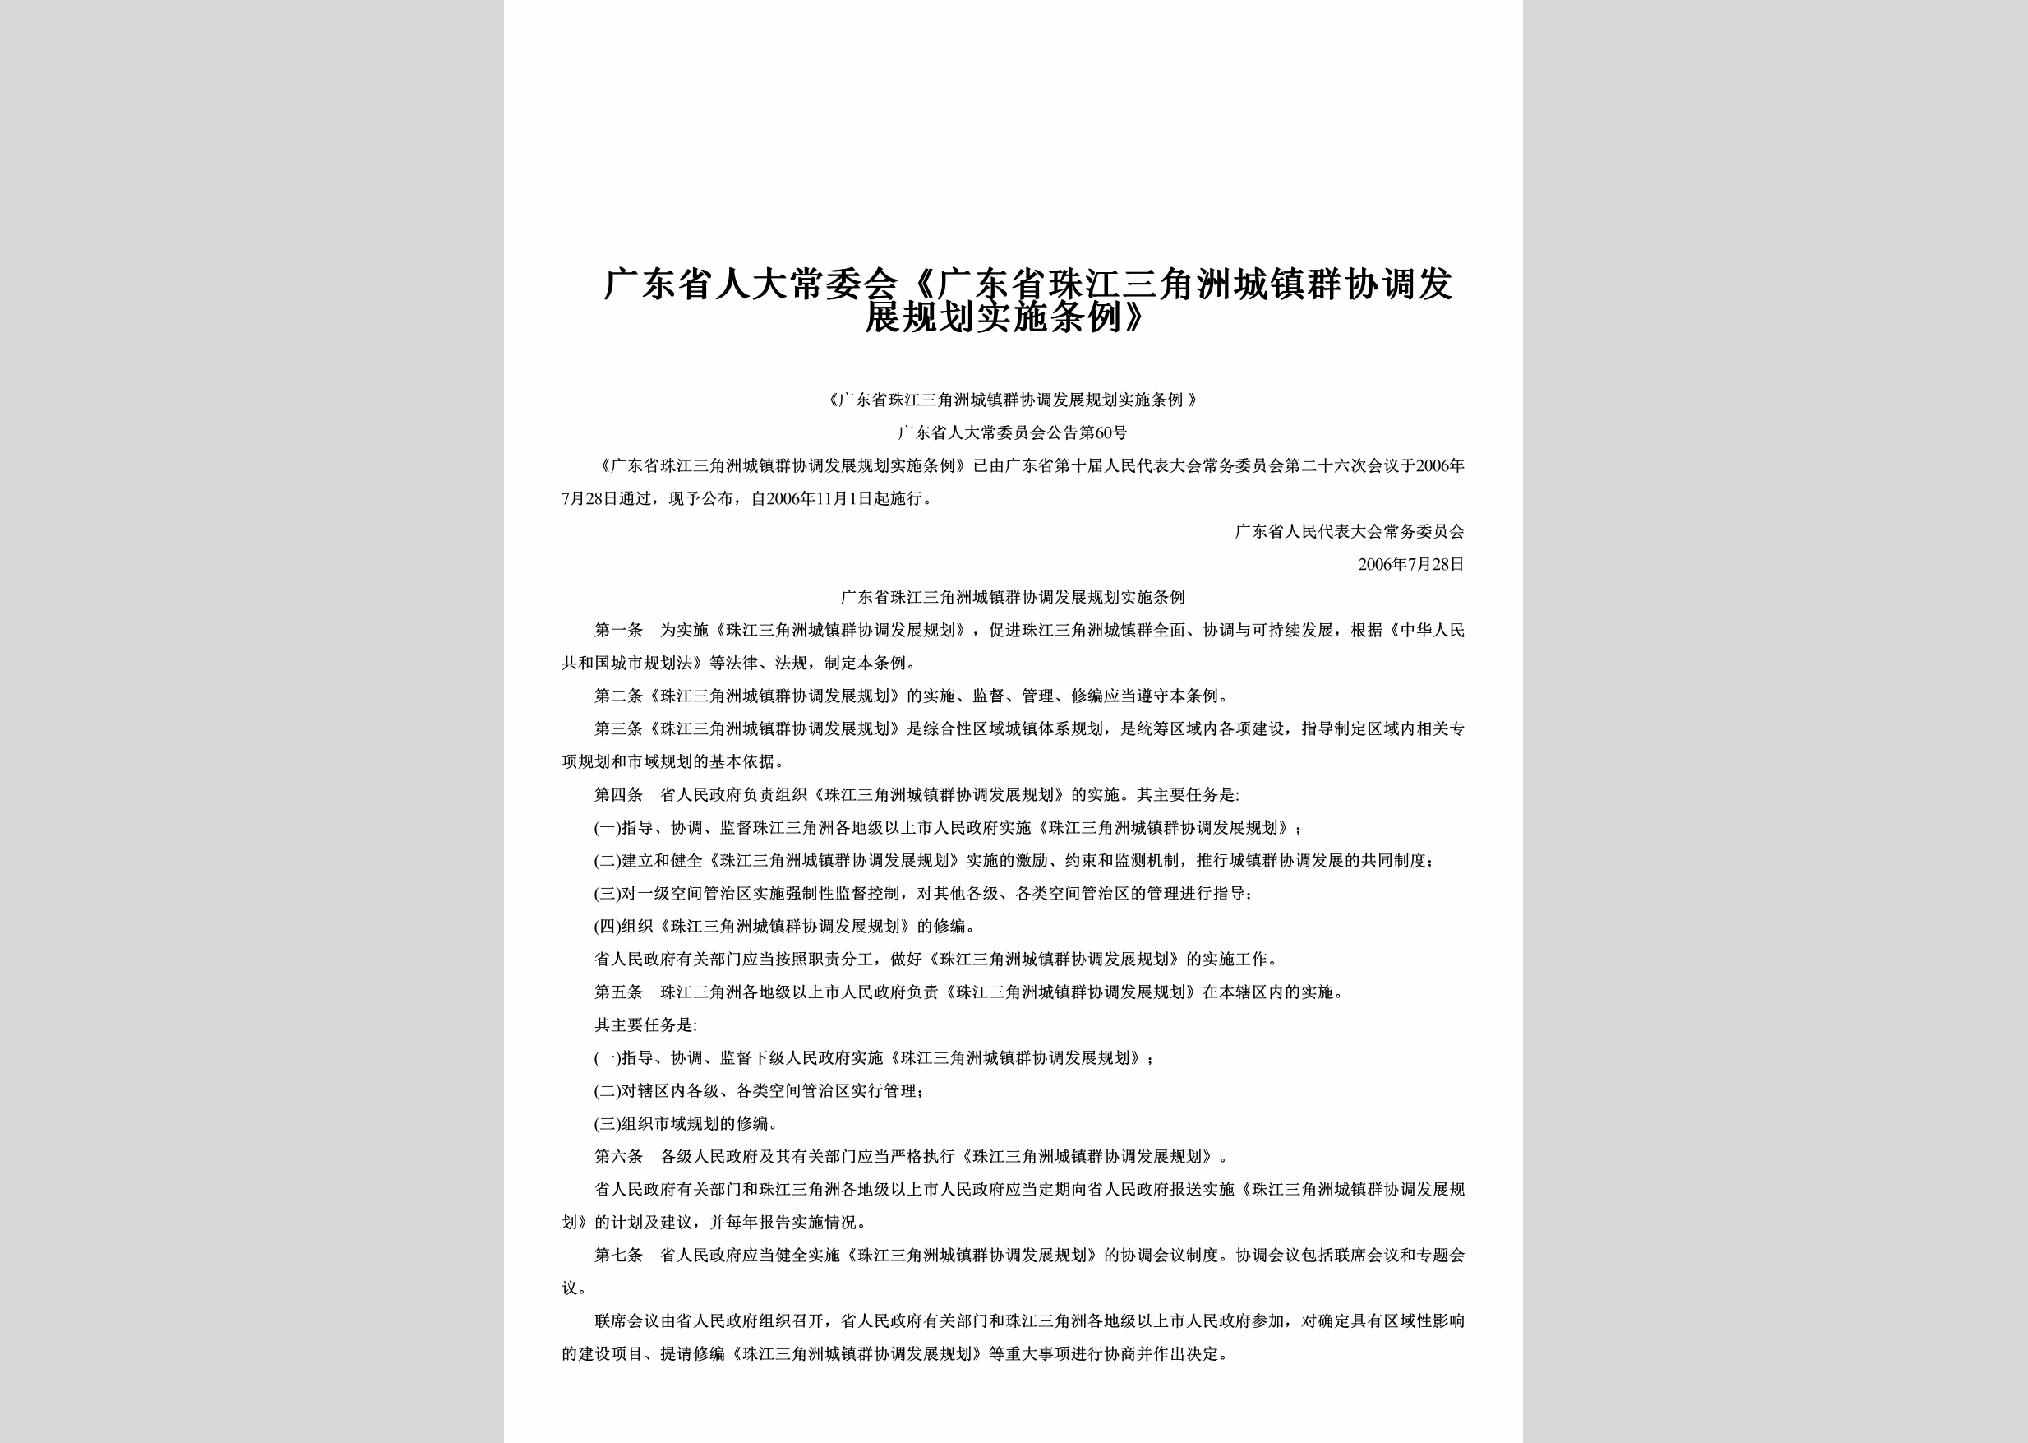 广东省人大常委会公告第60号：《广东省珠江三角洲城镇群协调发展规划实施条例》